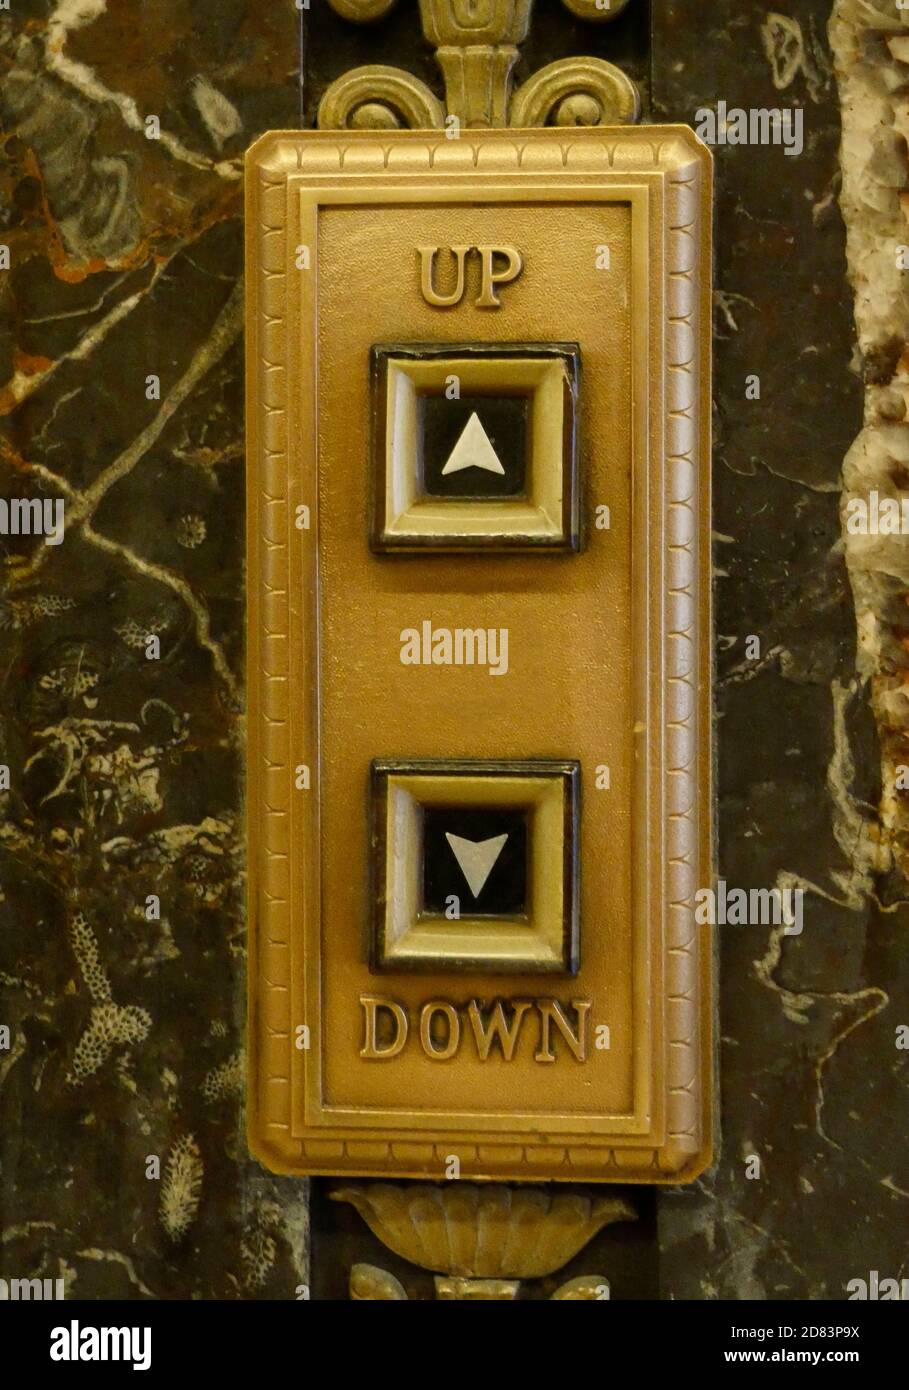 Botones del elevador subiendo y bajando Foto de stock